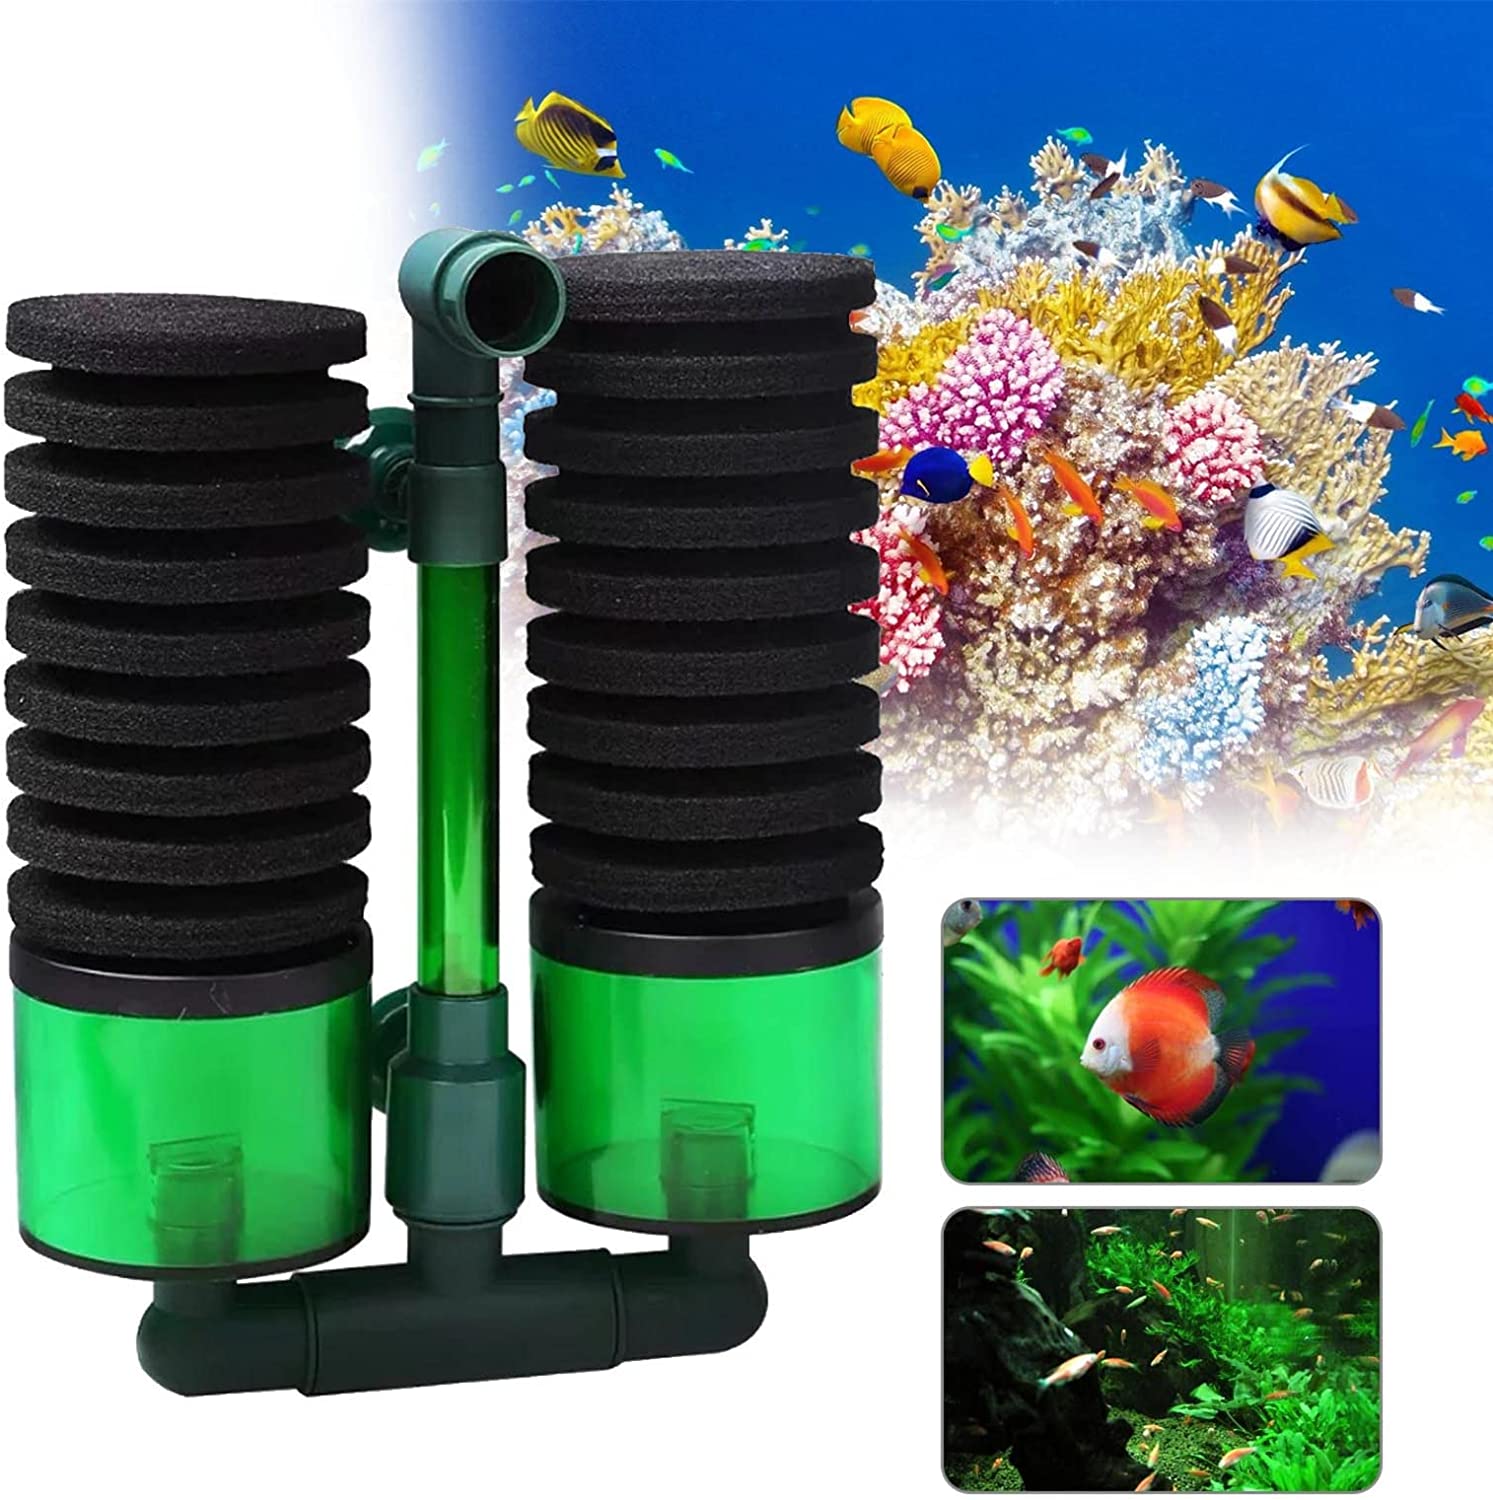 Best Aquarium Sponge Filters - Product Review